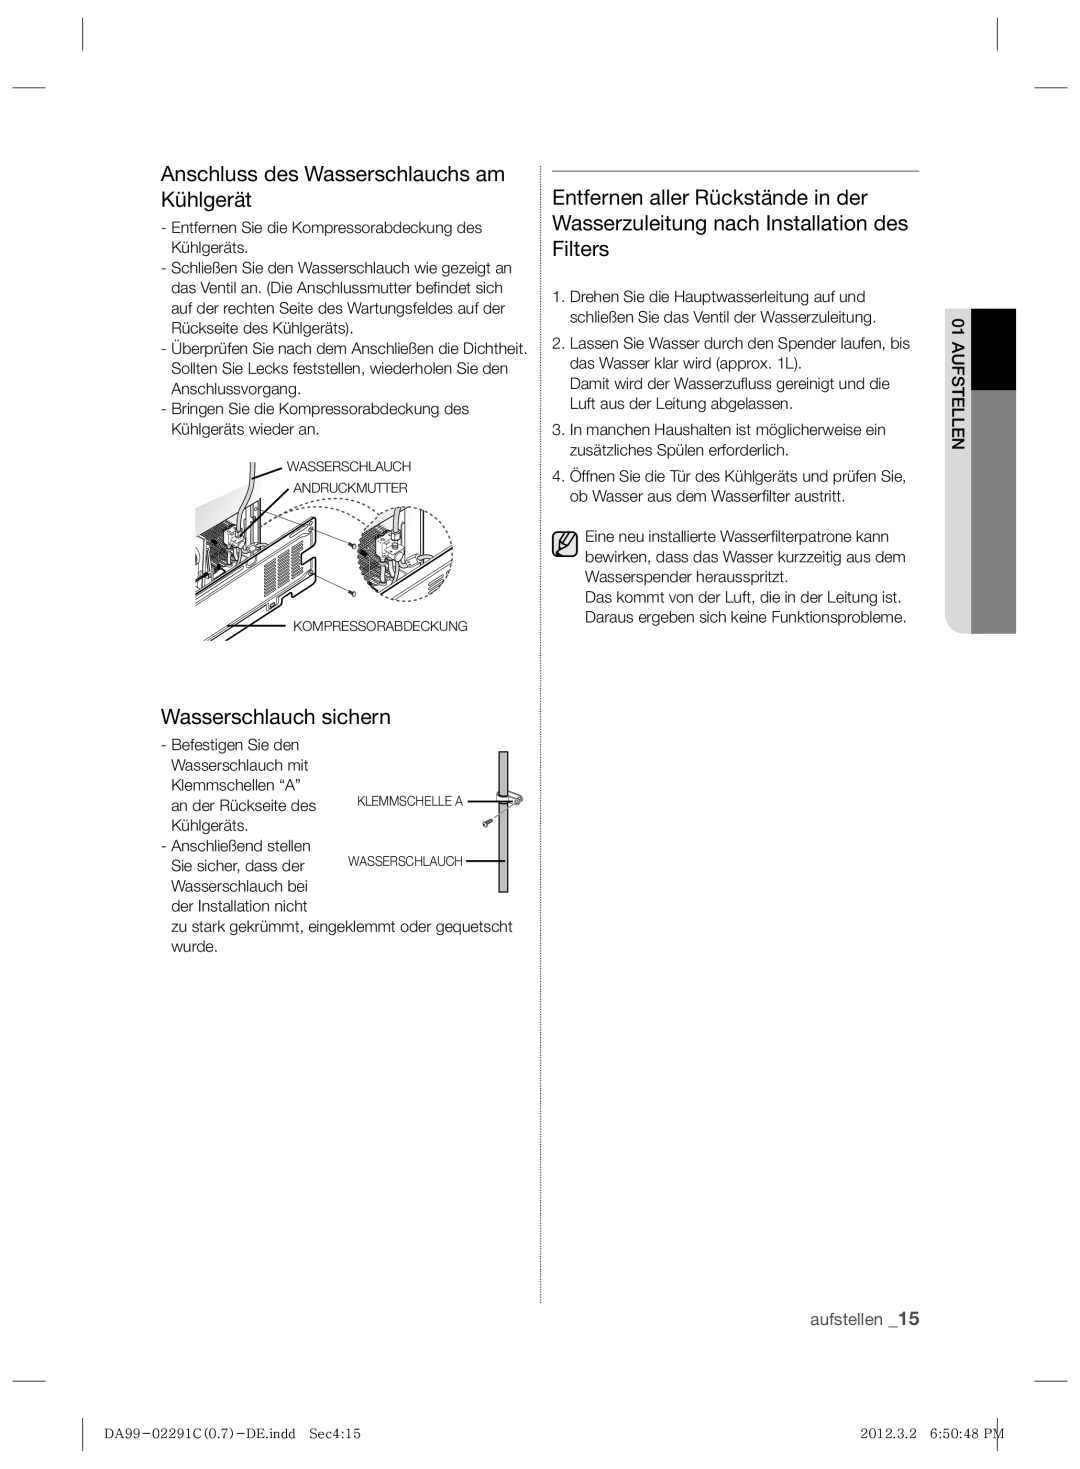 Samsung RSH7ZNPN1/XEG, RSH7ZNRS1/EUR manual Anschluss des Wasserschlauchs am Kühlgerät, Wasserschlauch sichern, aufstellen 